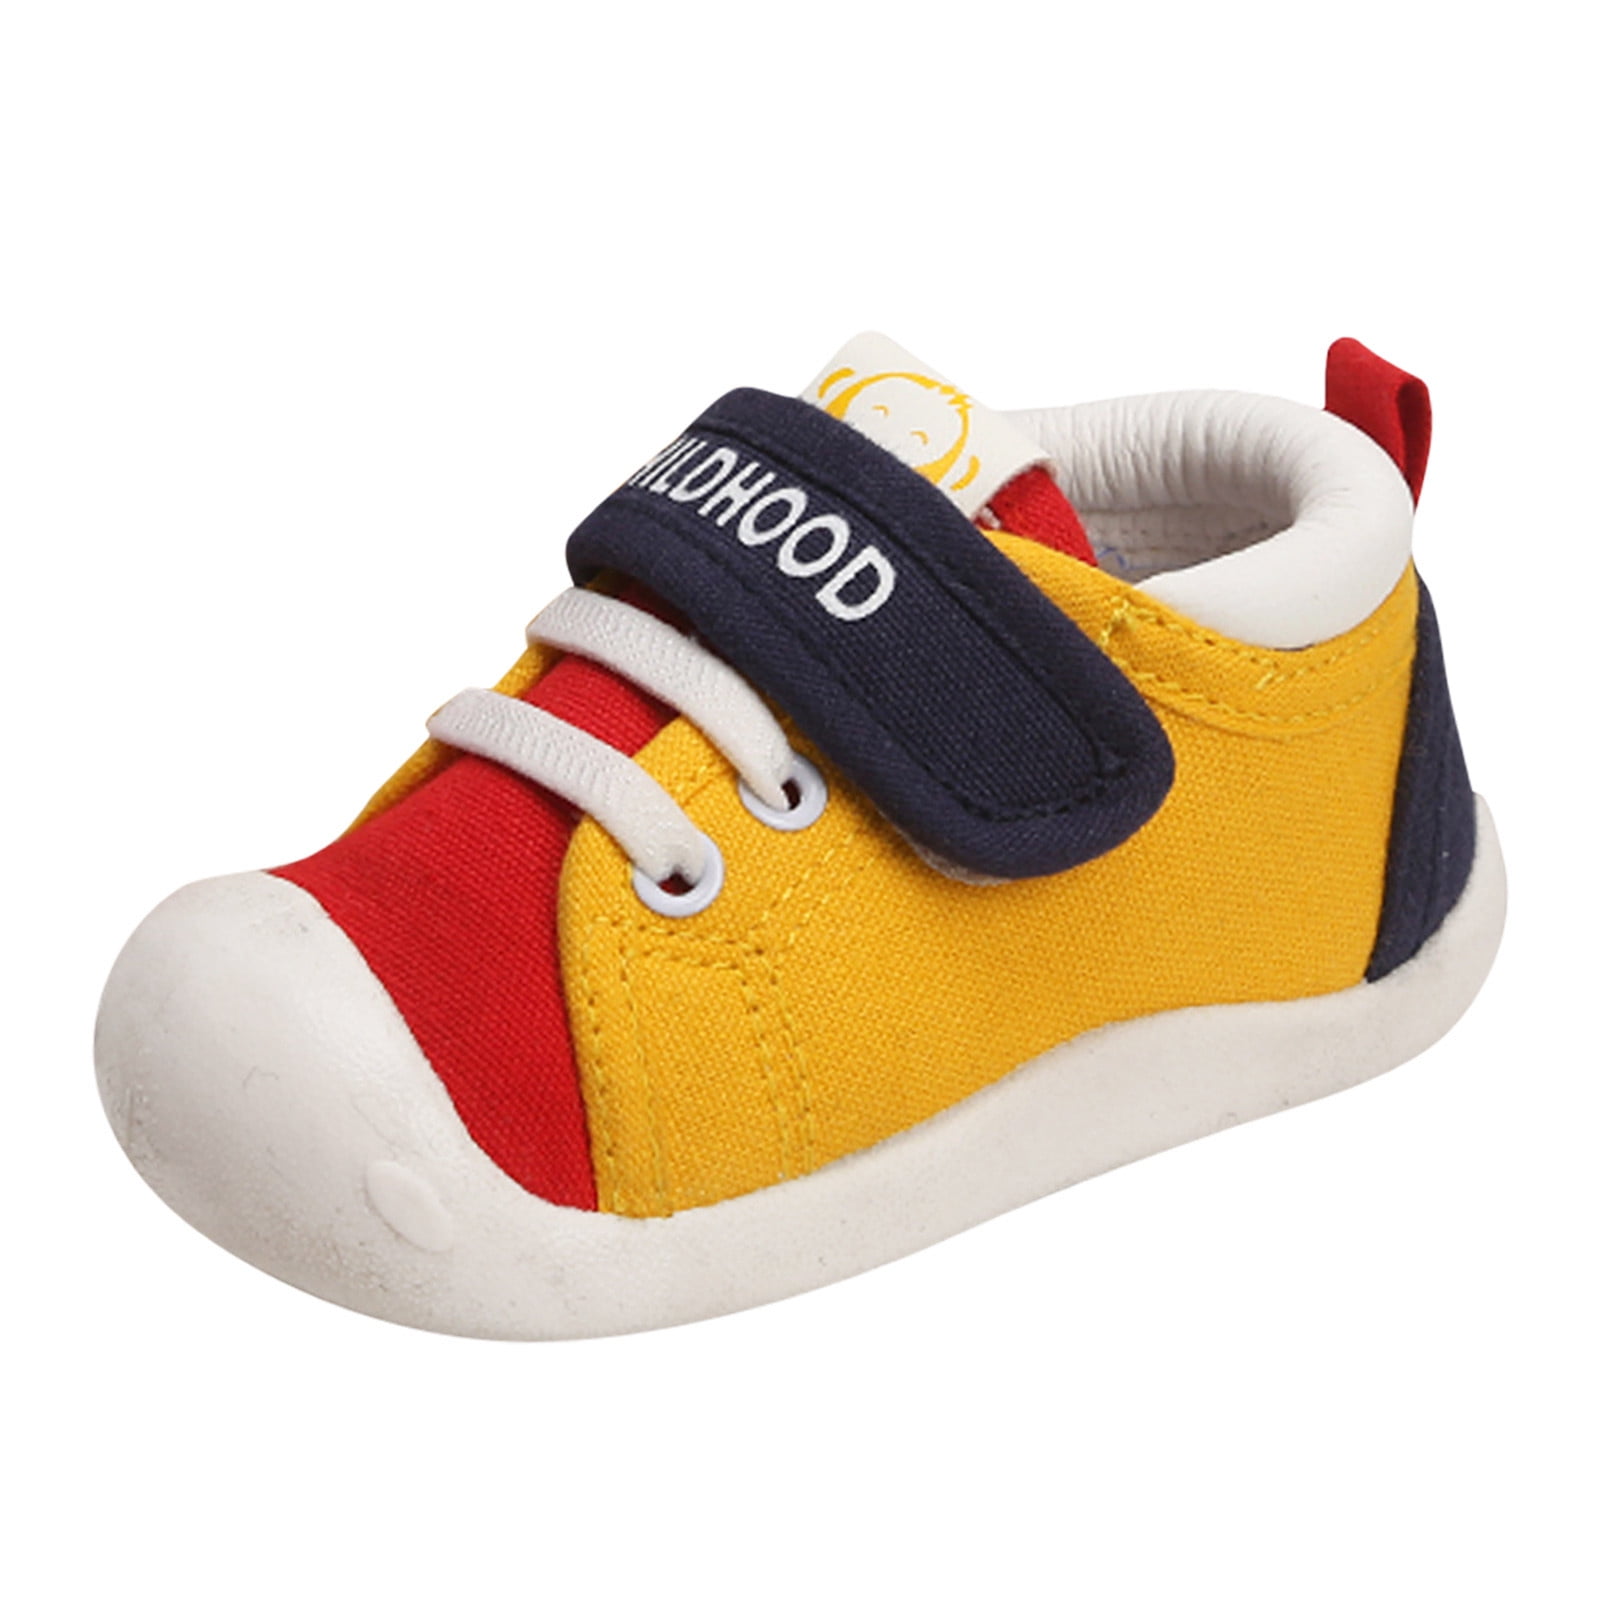 Adidas boys shoes size 6 youth | eBay